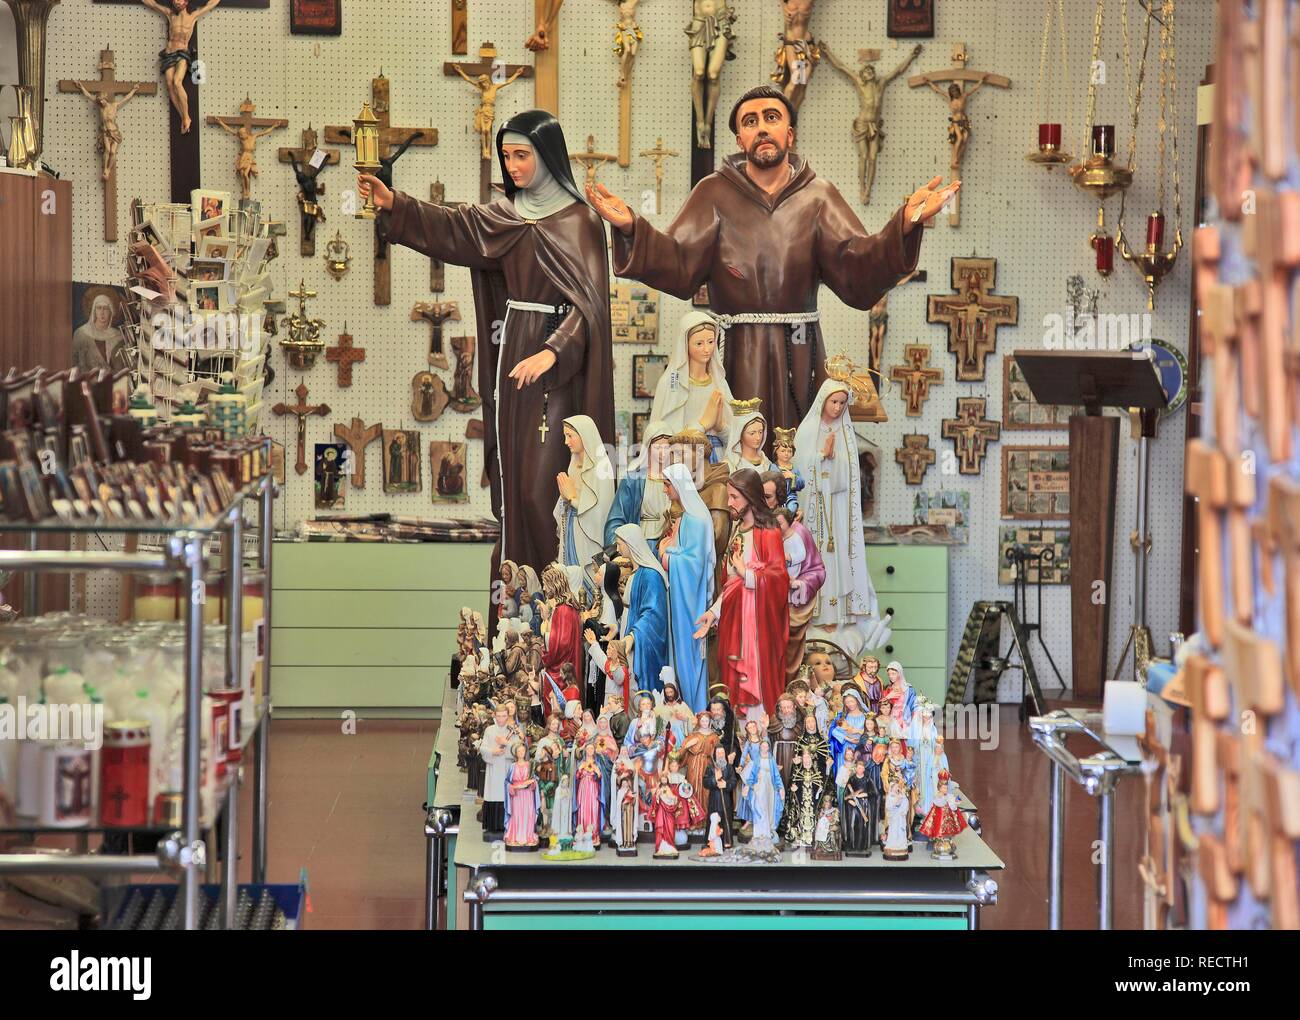 Boutique pour les objets de dévotion dans la ville historique d'Assise, Ombrie, Italie, Europe Banque D'Images